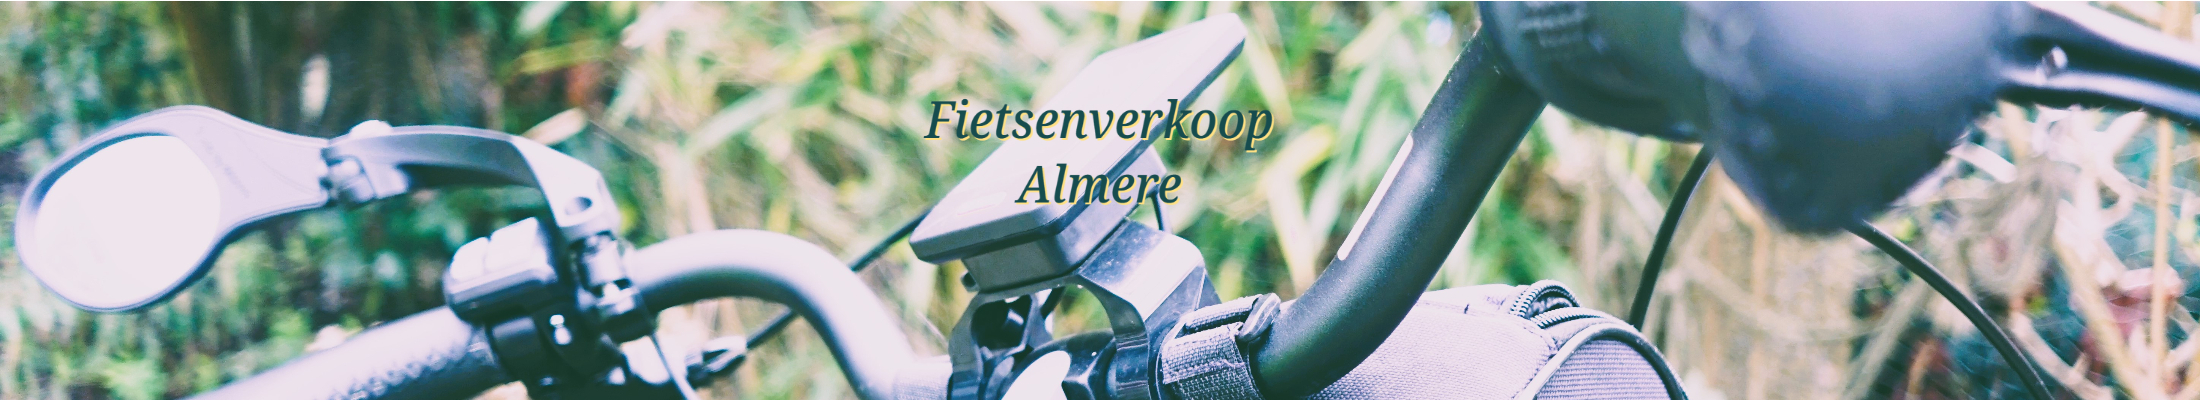 Fietsverkoop Almere